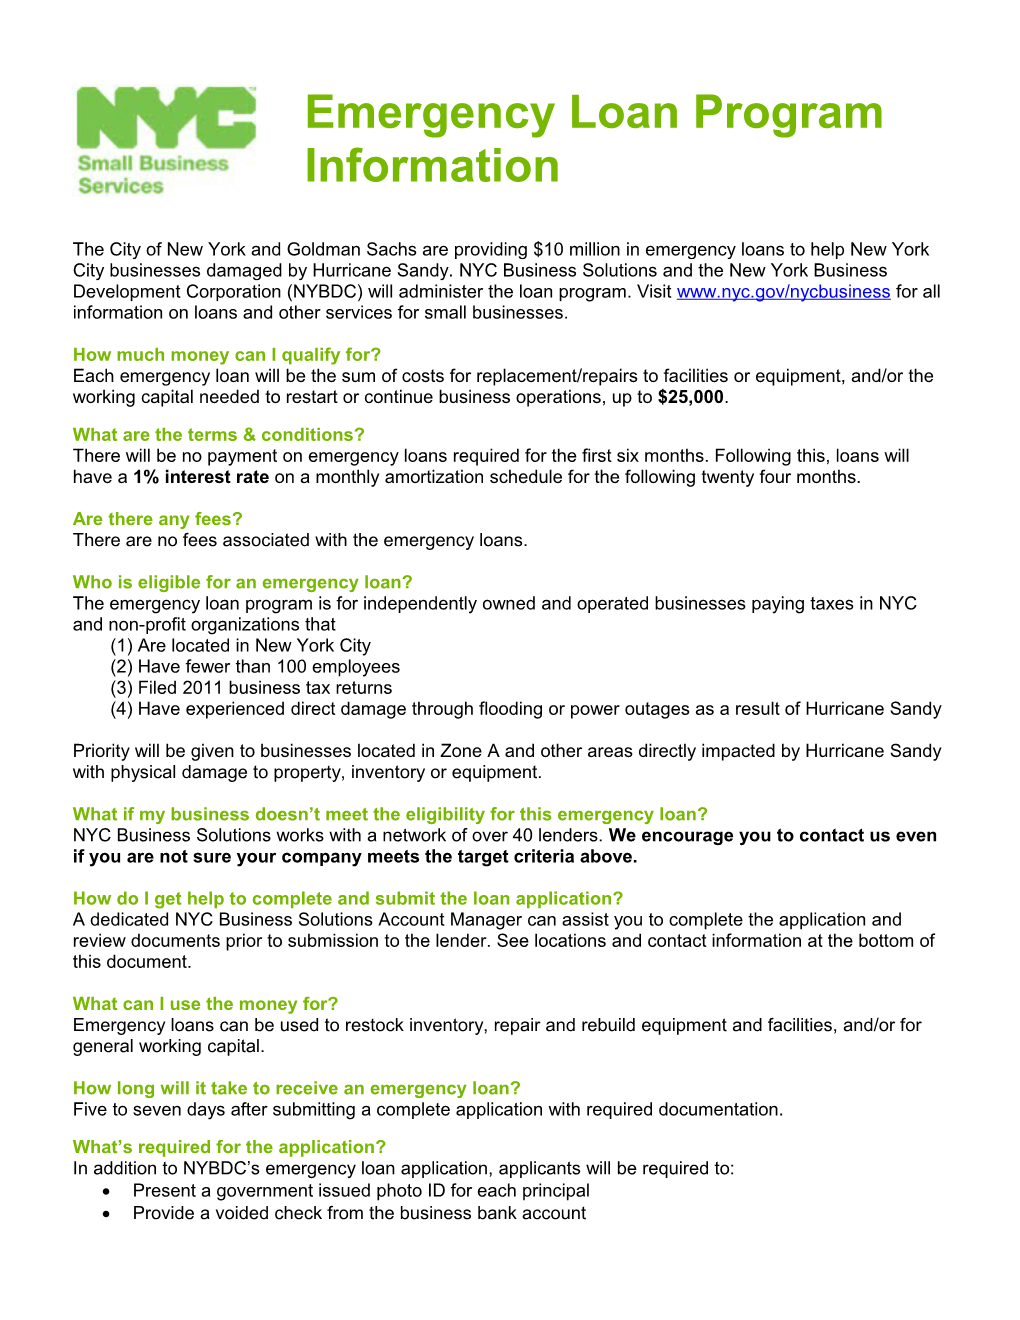 Emergency Loan Program Information